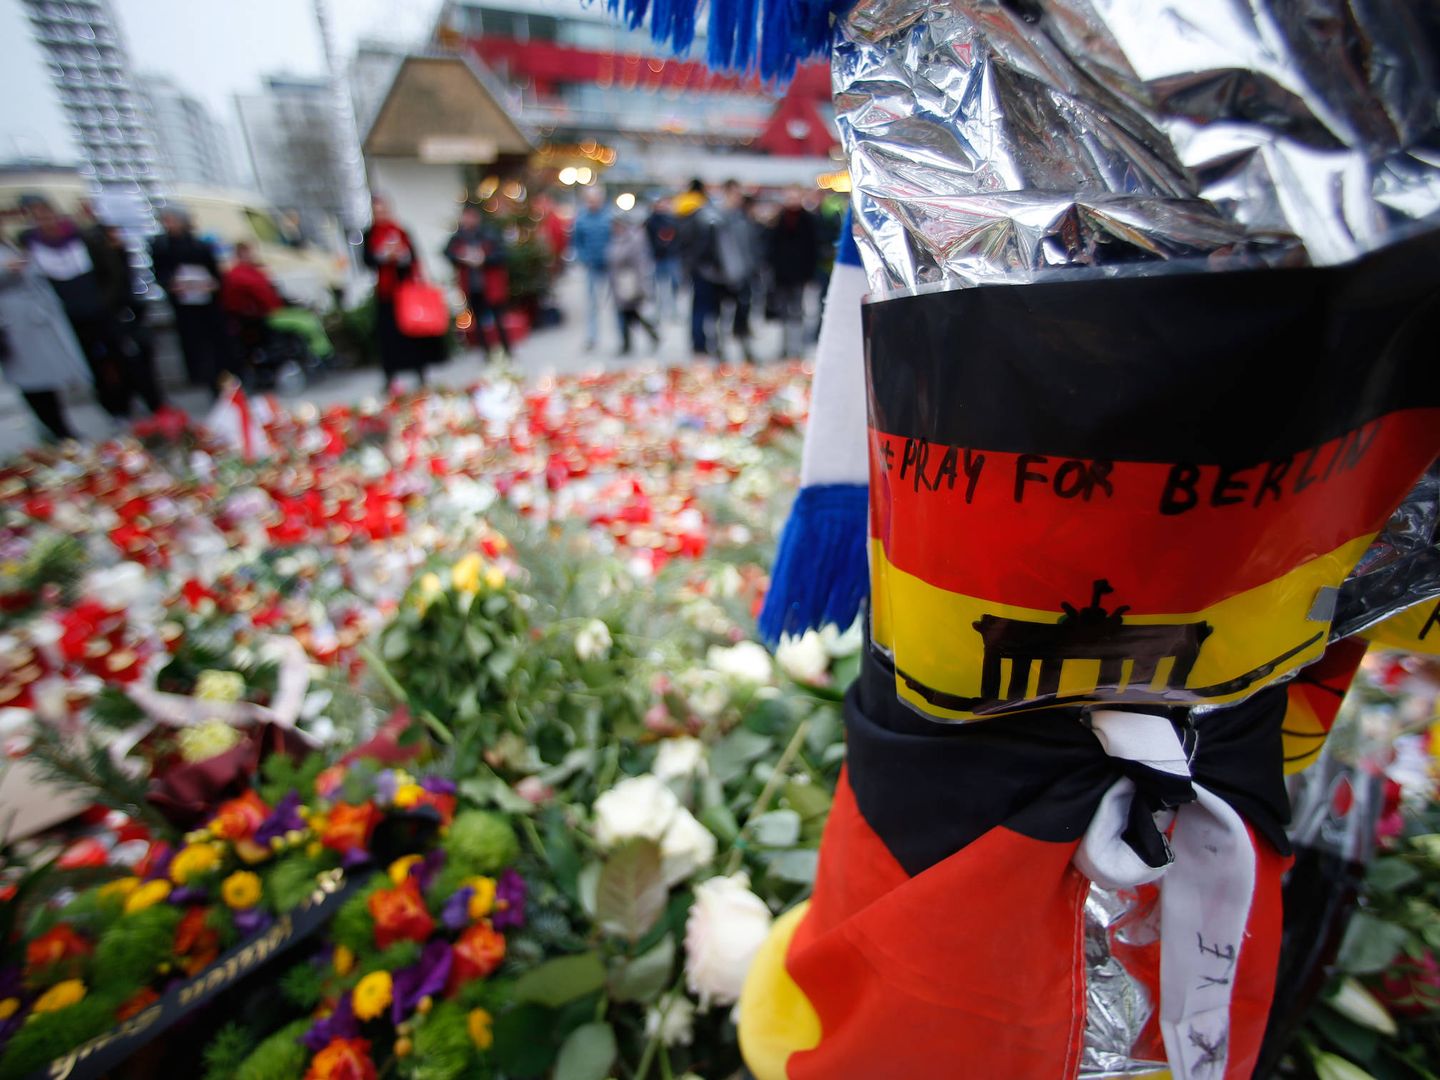 Flores y velas cerca del mercadillo navideño de Berlín donde se produjo un ataque terrorista. (Reuters)